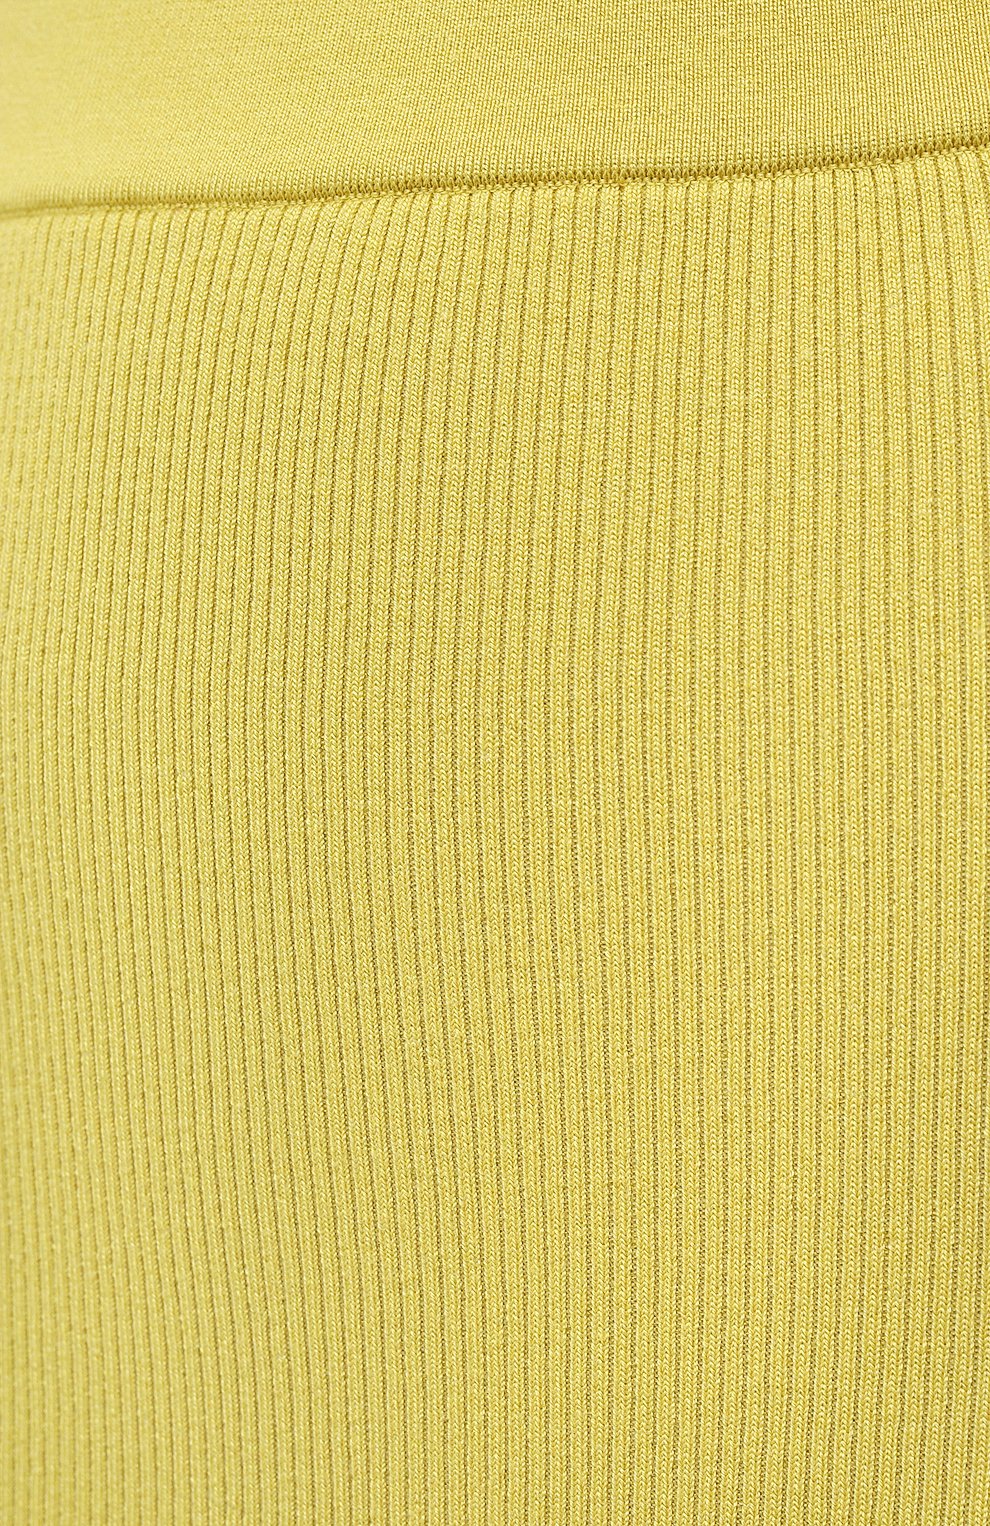 Женская юбка из кашемира и шелка TOM FORD желтого цвета, арт. GCK097-YAX320 | Фото 5 (Материал внешний: Шерсть, Кашемир; Стили: Гламурный; Кросс-КТ: Трикотаж; Женское Кросс-КТ: Юбка-одежда; Длина Ж (юбки, платья, шорты): Миди)